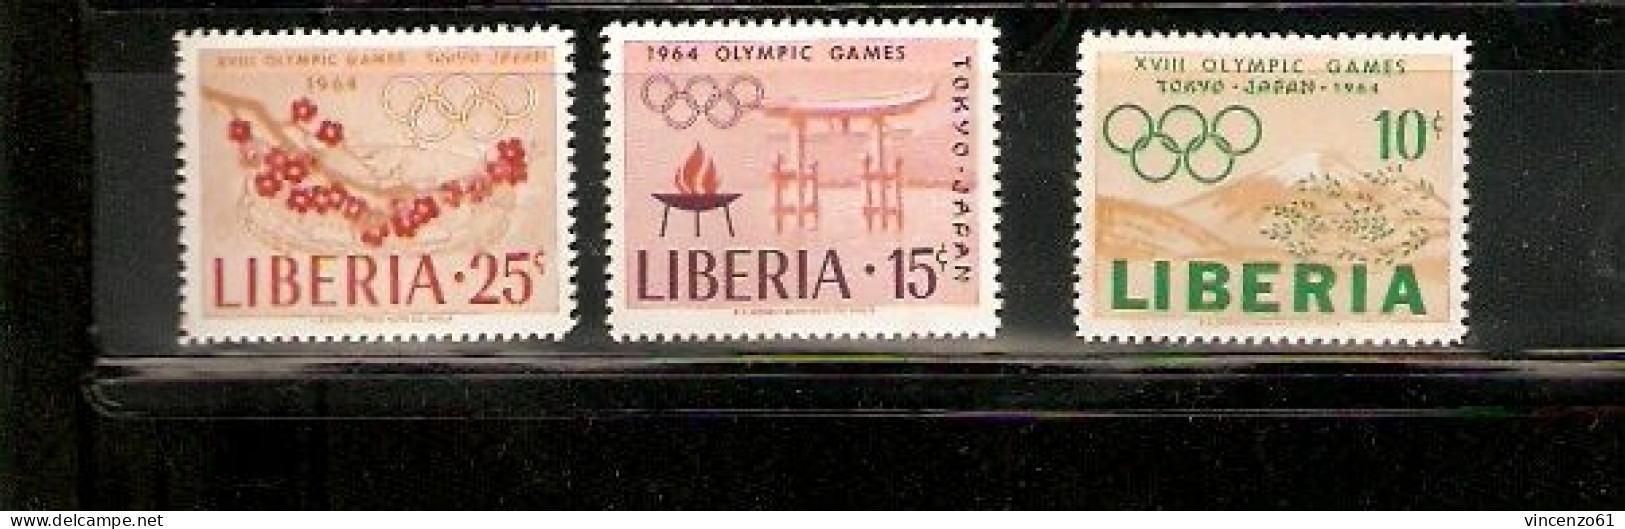 LIBERIA TOKIO OLIMPIC GAME 1964 - Estate 1964: Tokio